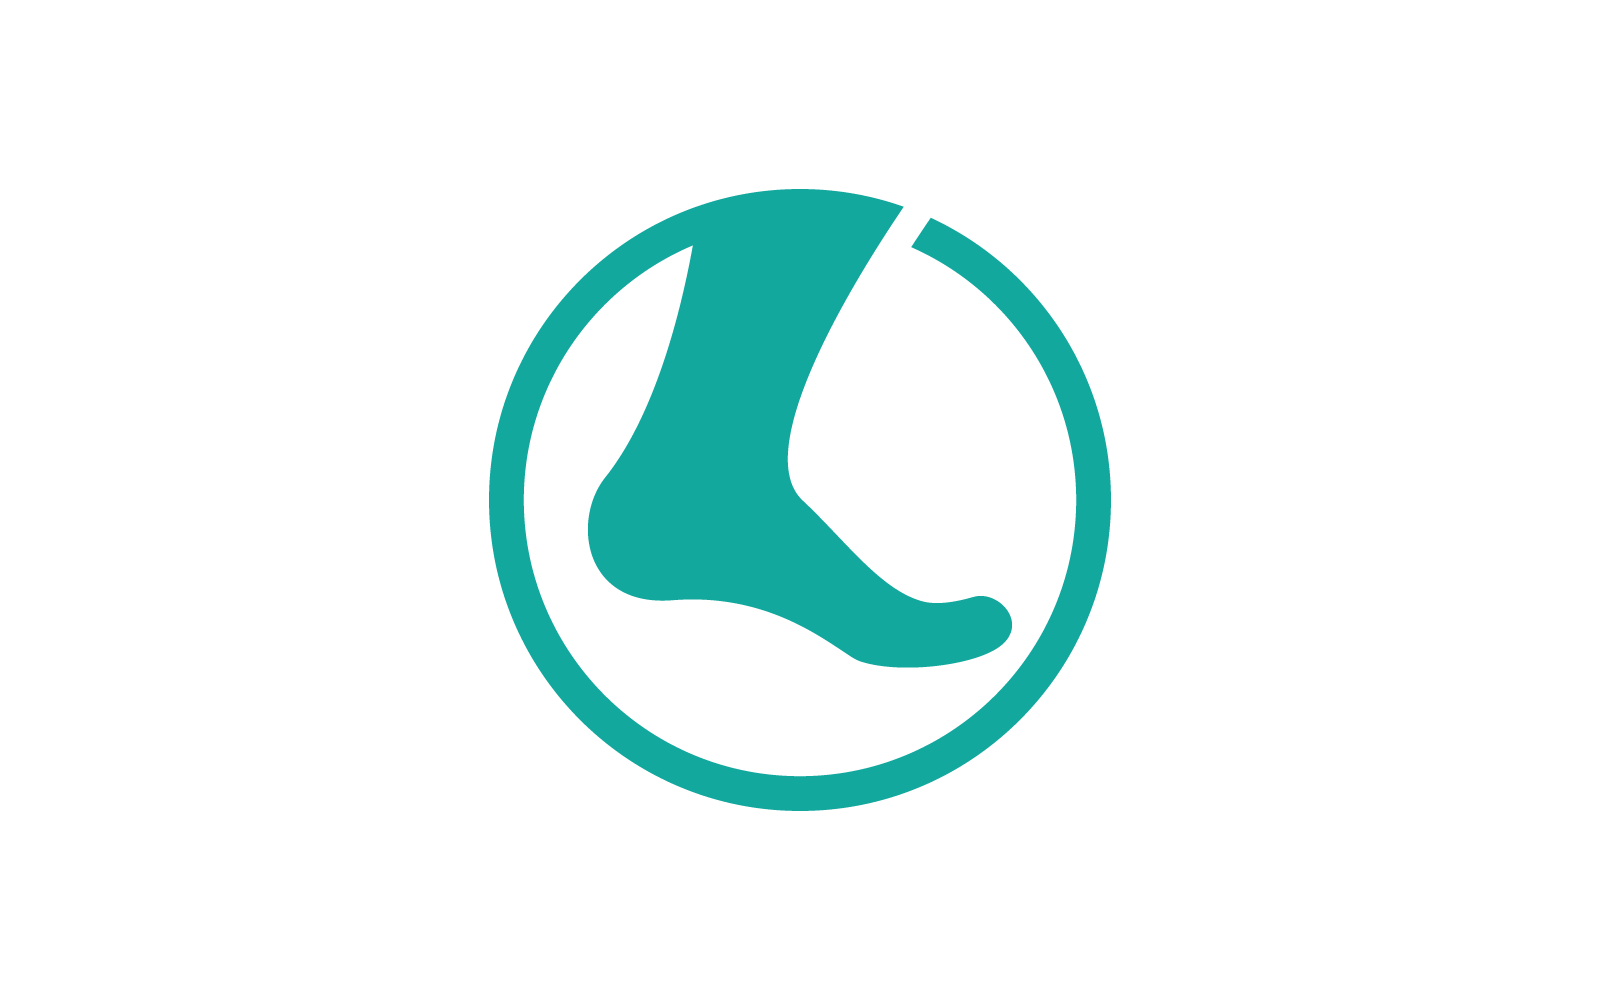 Foot illustration logo vector design